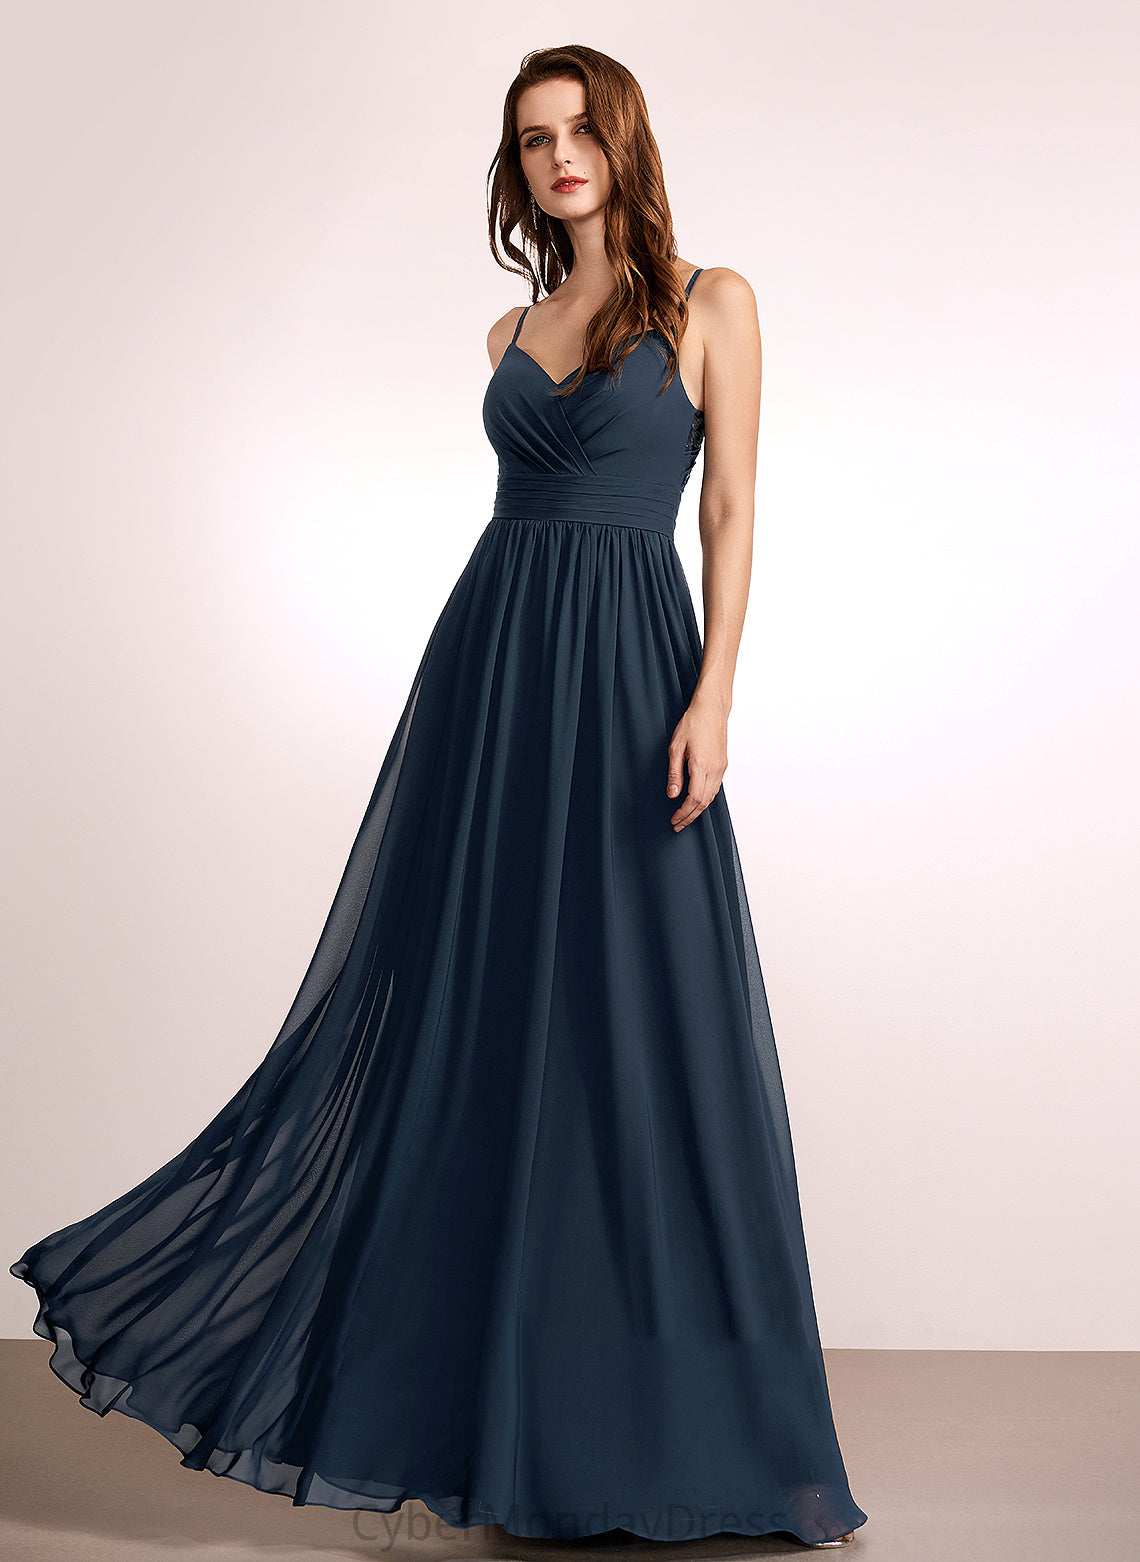 Lace V-neck Neckline Silhouette Fabric Length A-Line Floor-Length Embellishment Carla V-Neck Natural Waist Bridesmaid Dresses